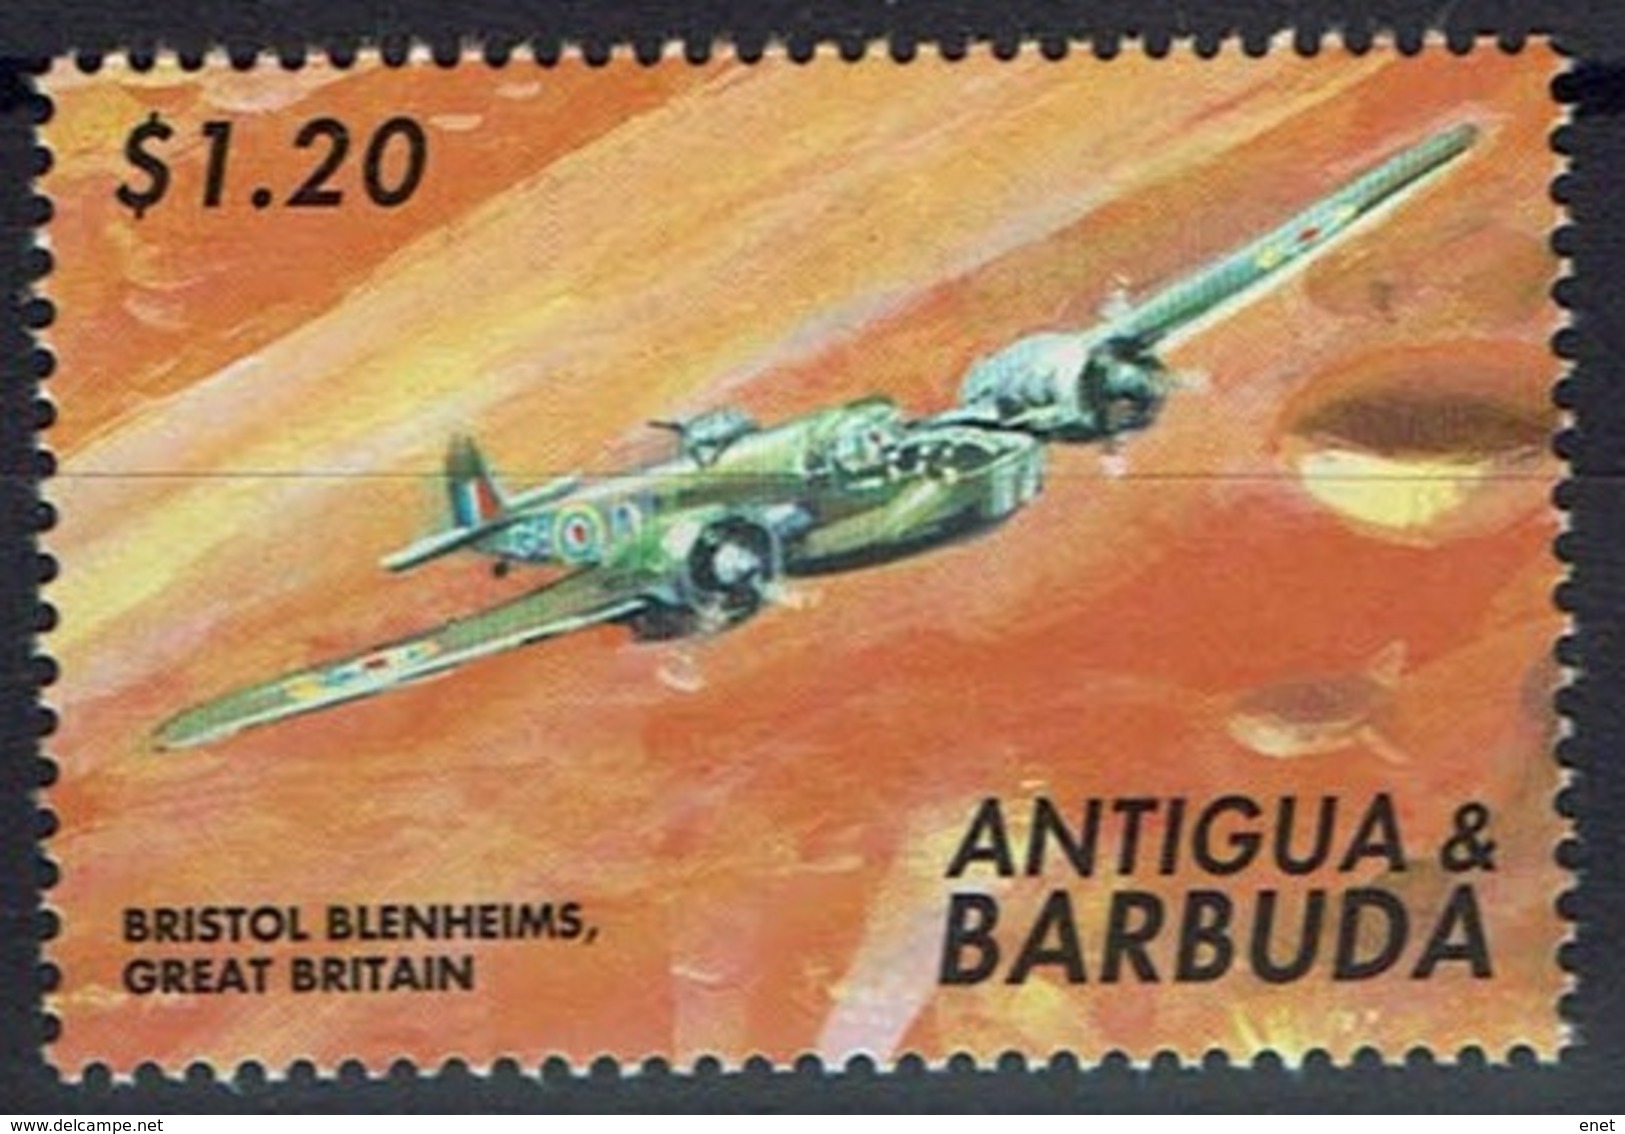 Antigua Und Barbuda 2000 - MiNr 3329 - Flugzeug Bristol-Blenheim Mit Geschützkanzel - Flugzeuge